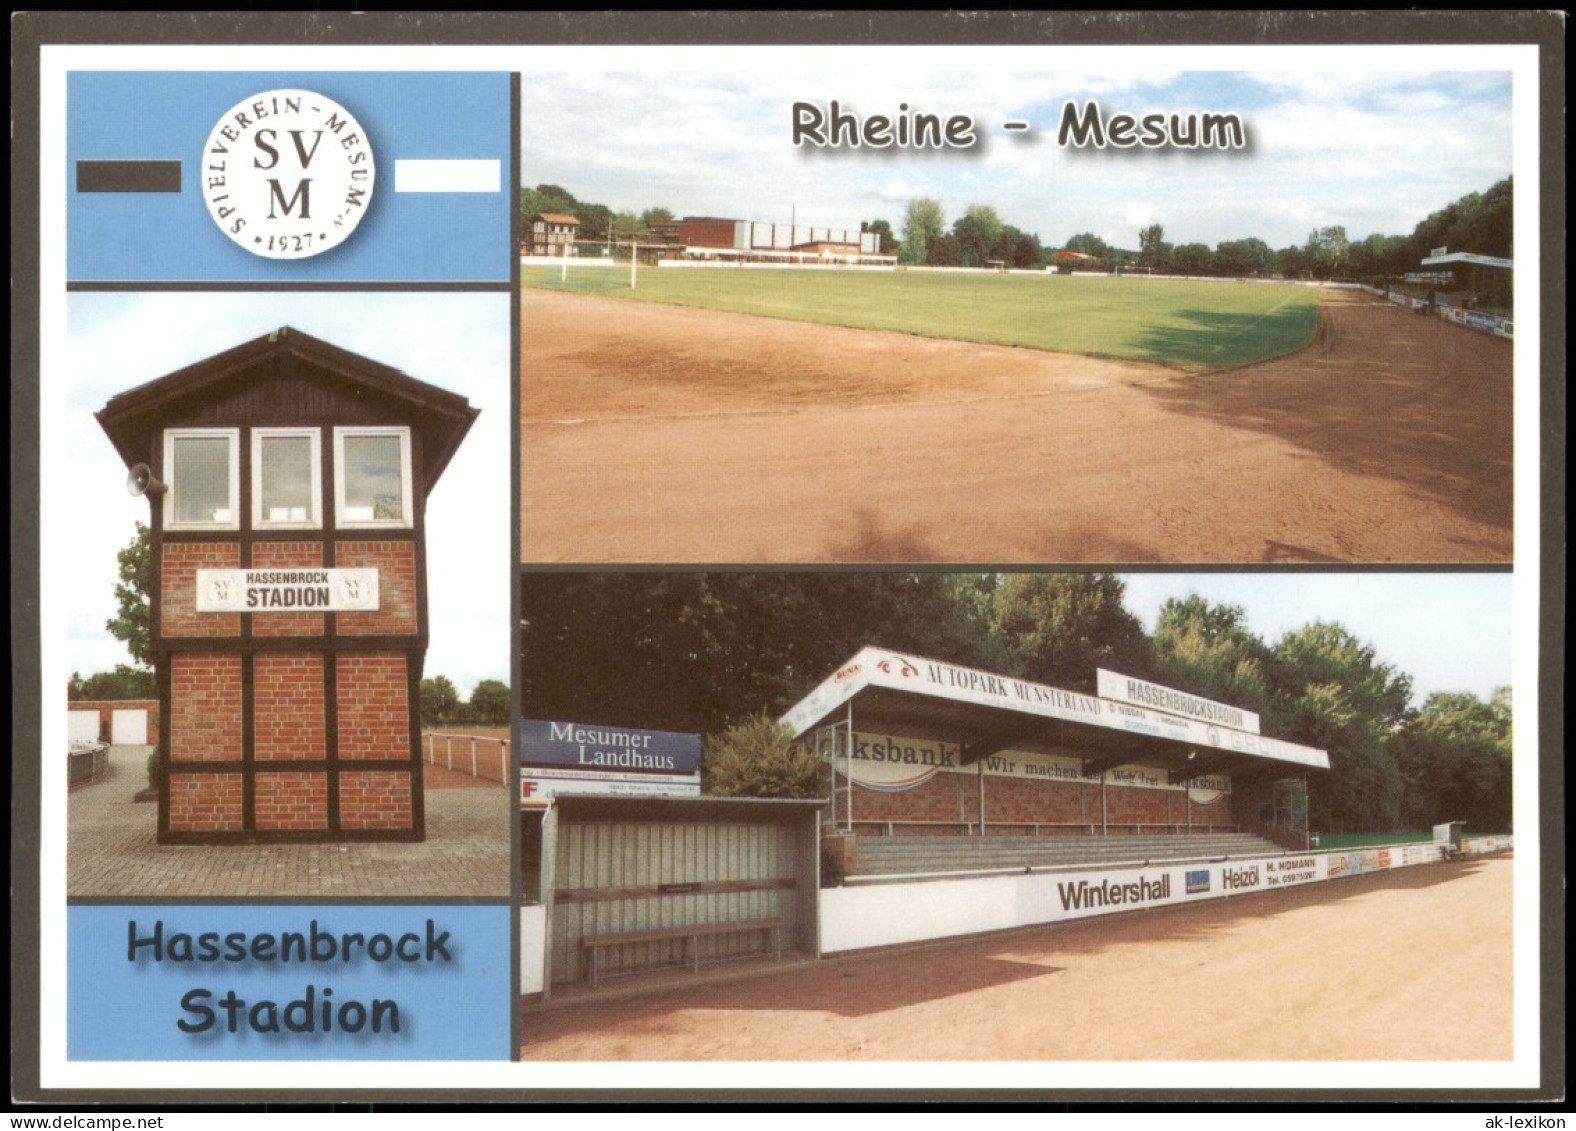 Rheine Fussball Stadion Hassenbrockstadion SV Mesum 1927 E.V. 2004 - Rheine